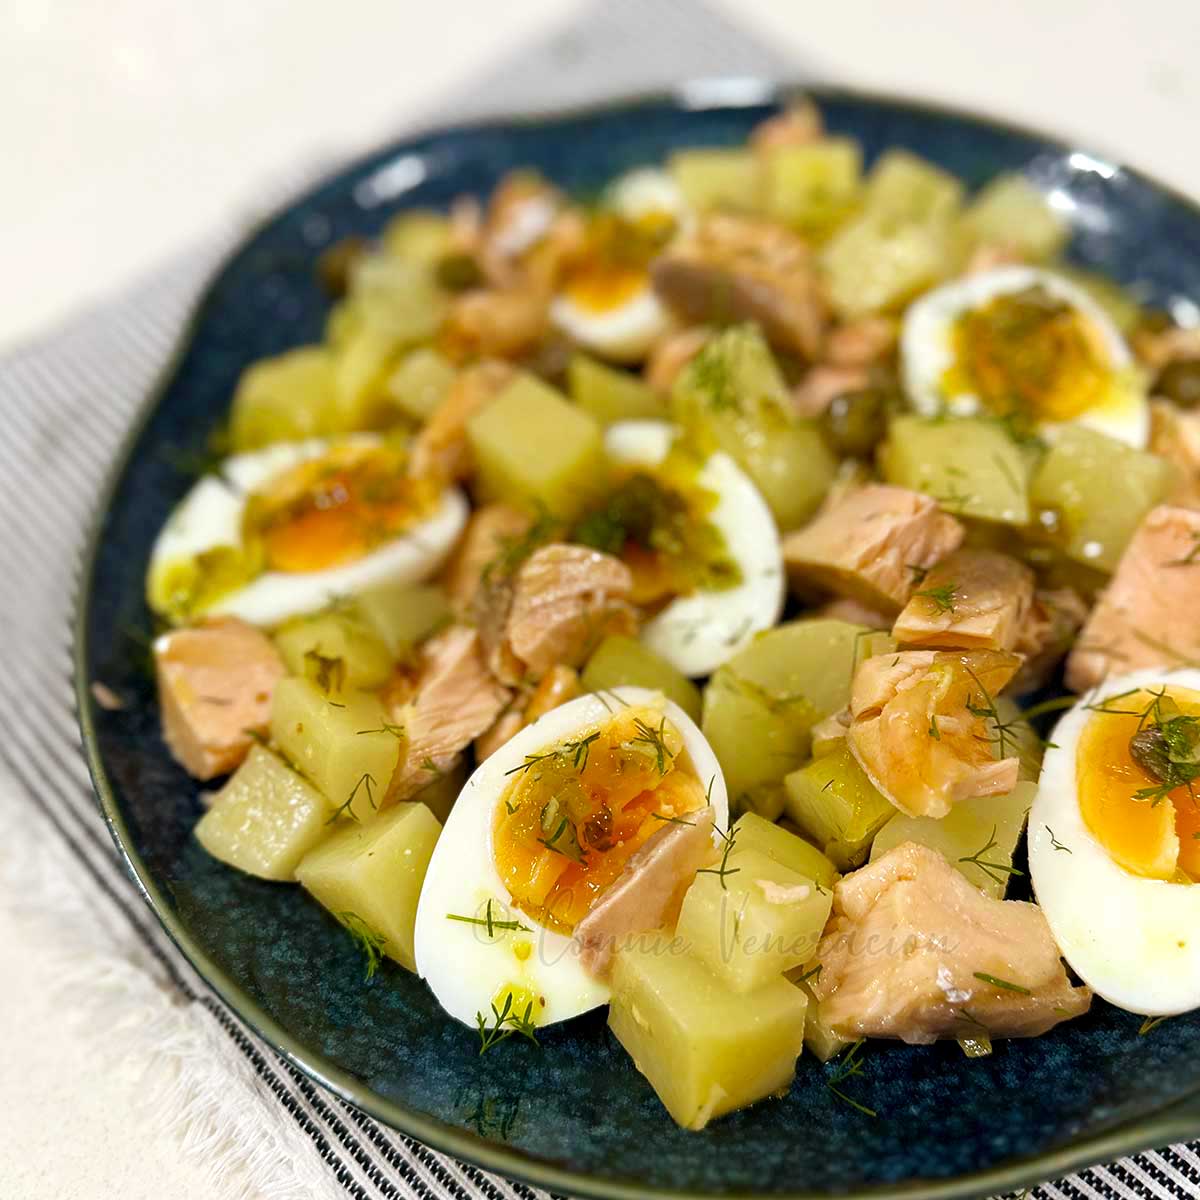 Salmon, potato and egg salad